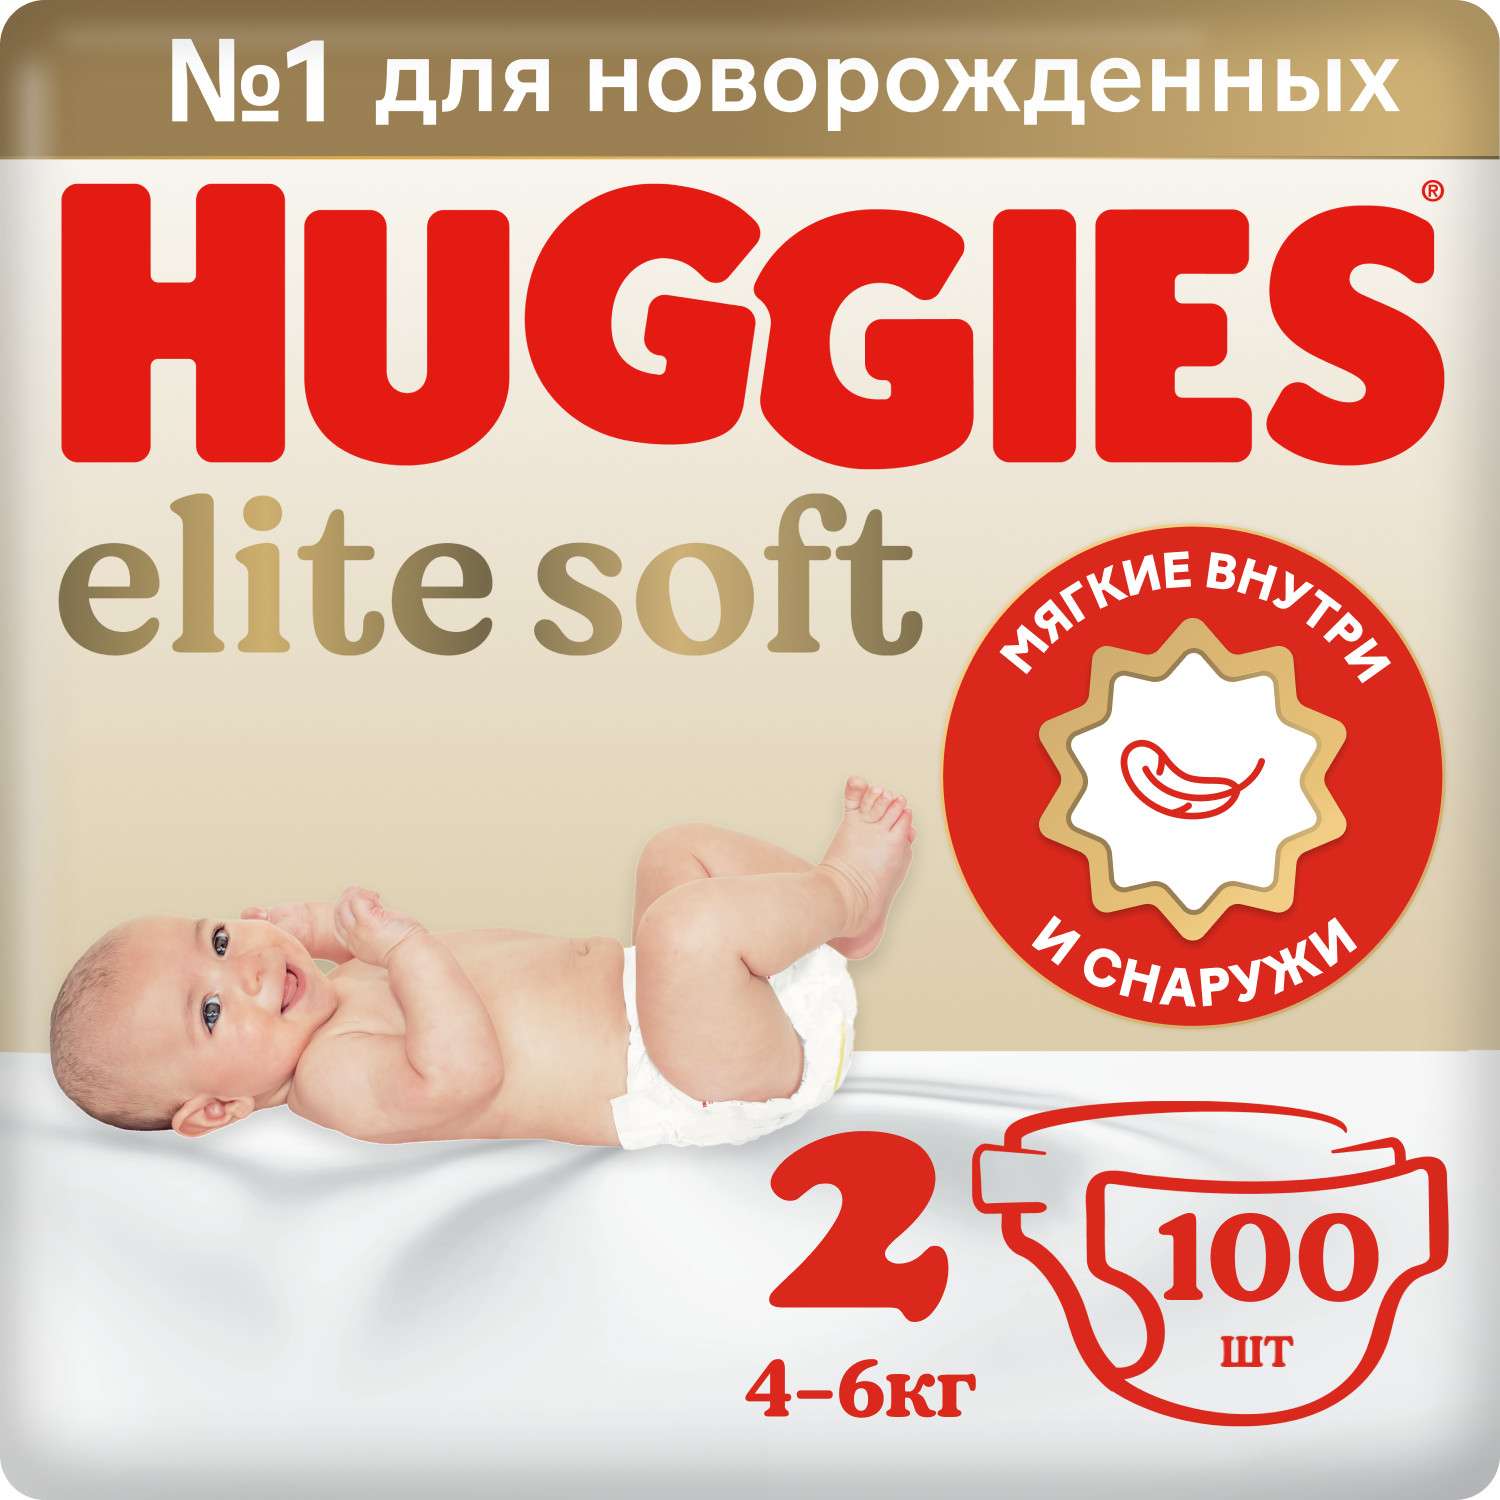 Подгузники Huggies Elite Soft для новорожденных 2 4-6кг 100шт - фото 1